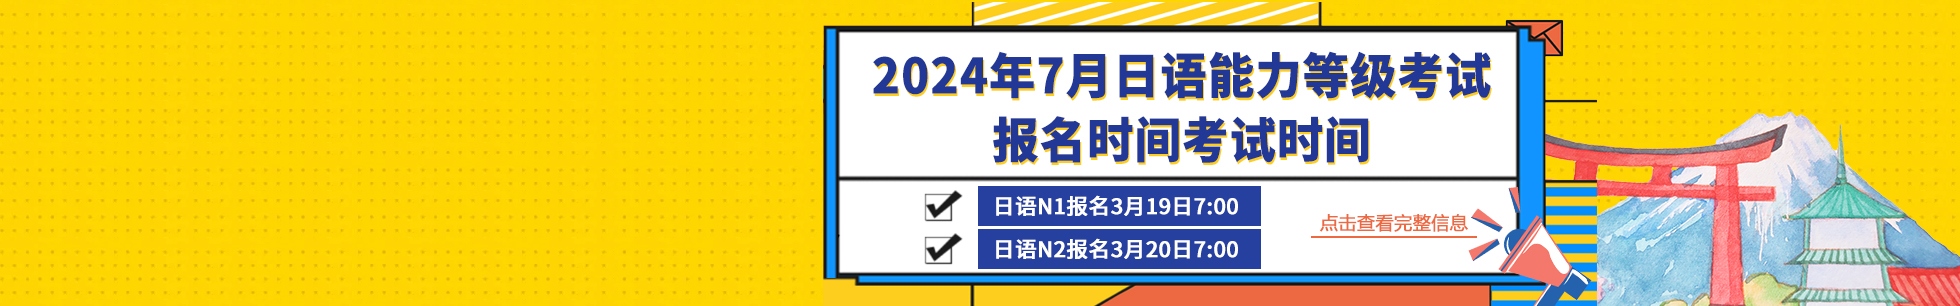 2024年7月日语能力等级考试报名时间